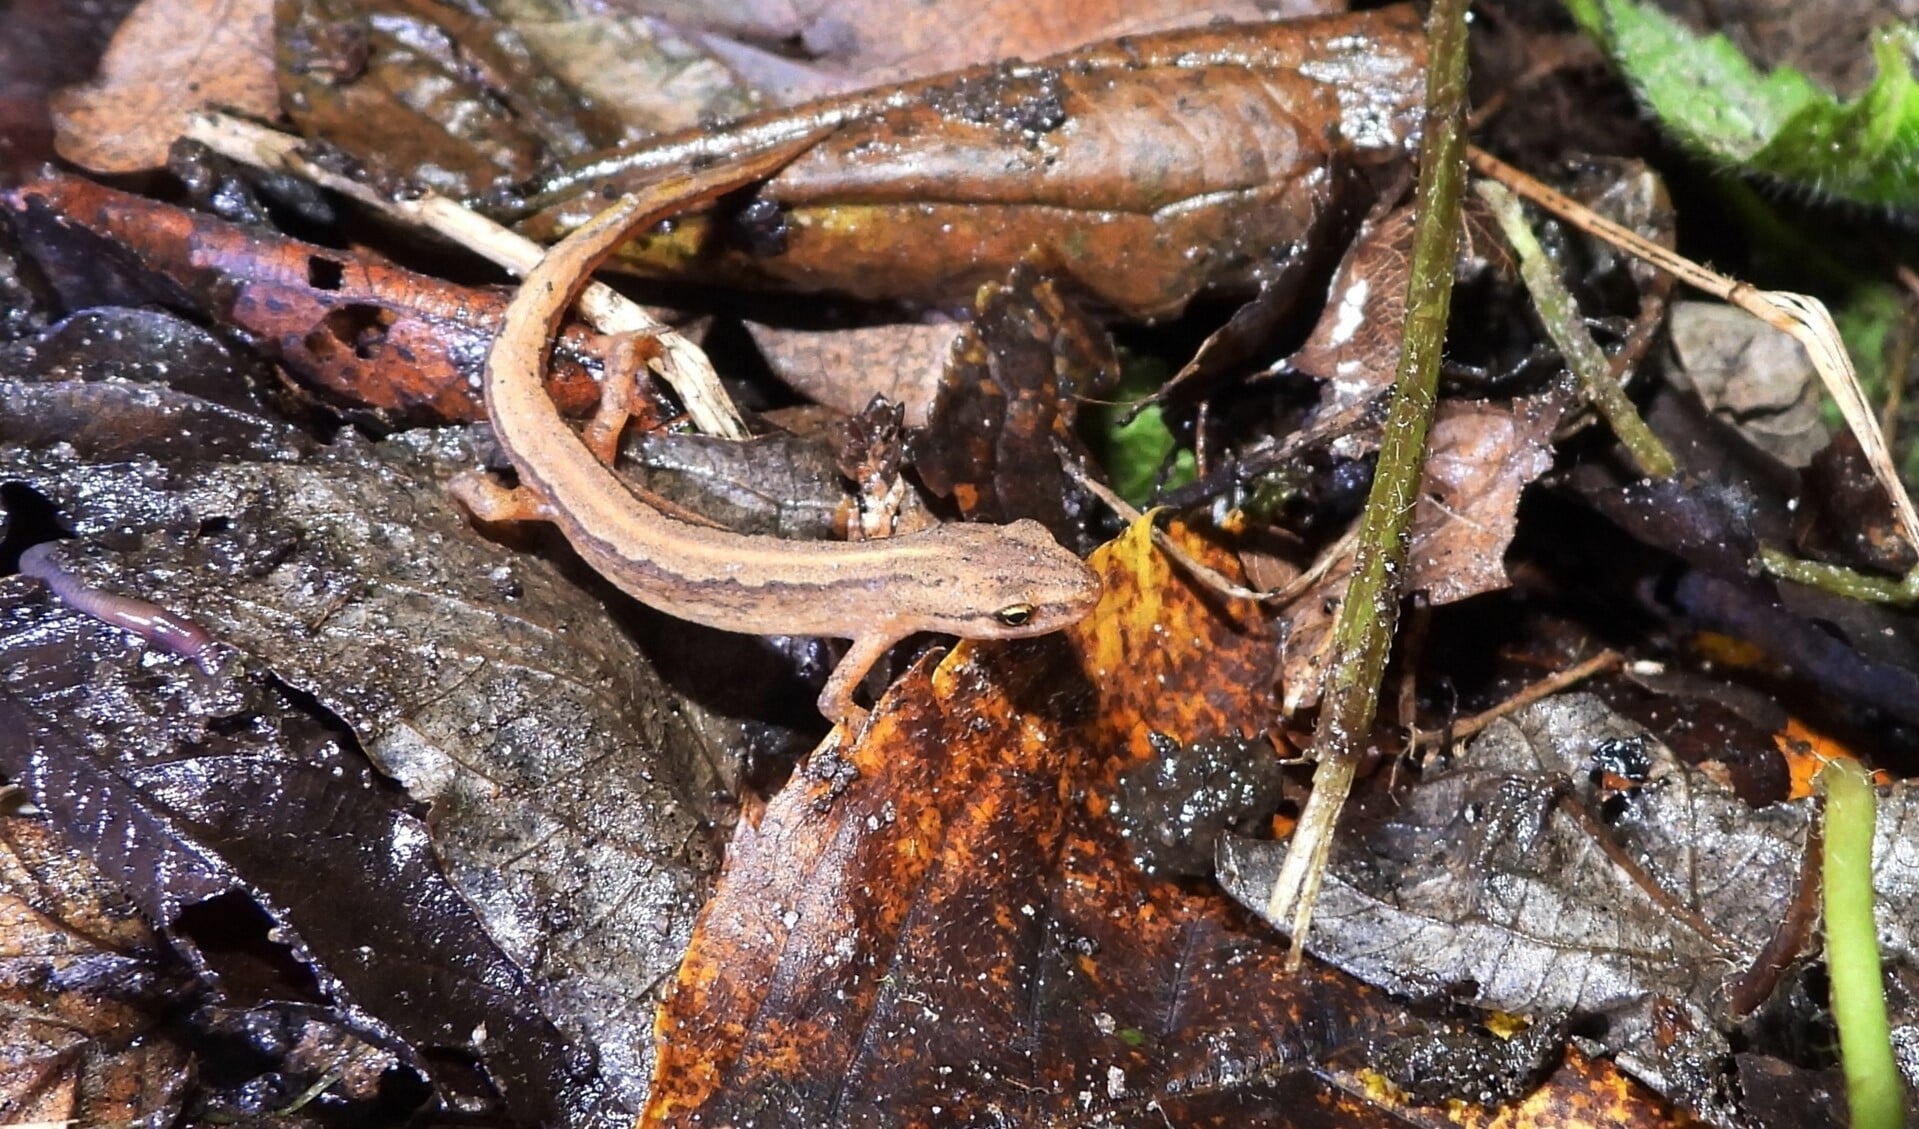 De kleine watersalamander op zijn nieuwe overwinteringsplek tussen dode bladeren.